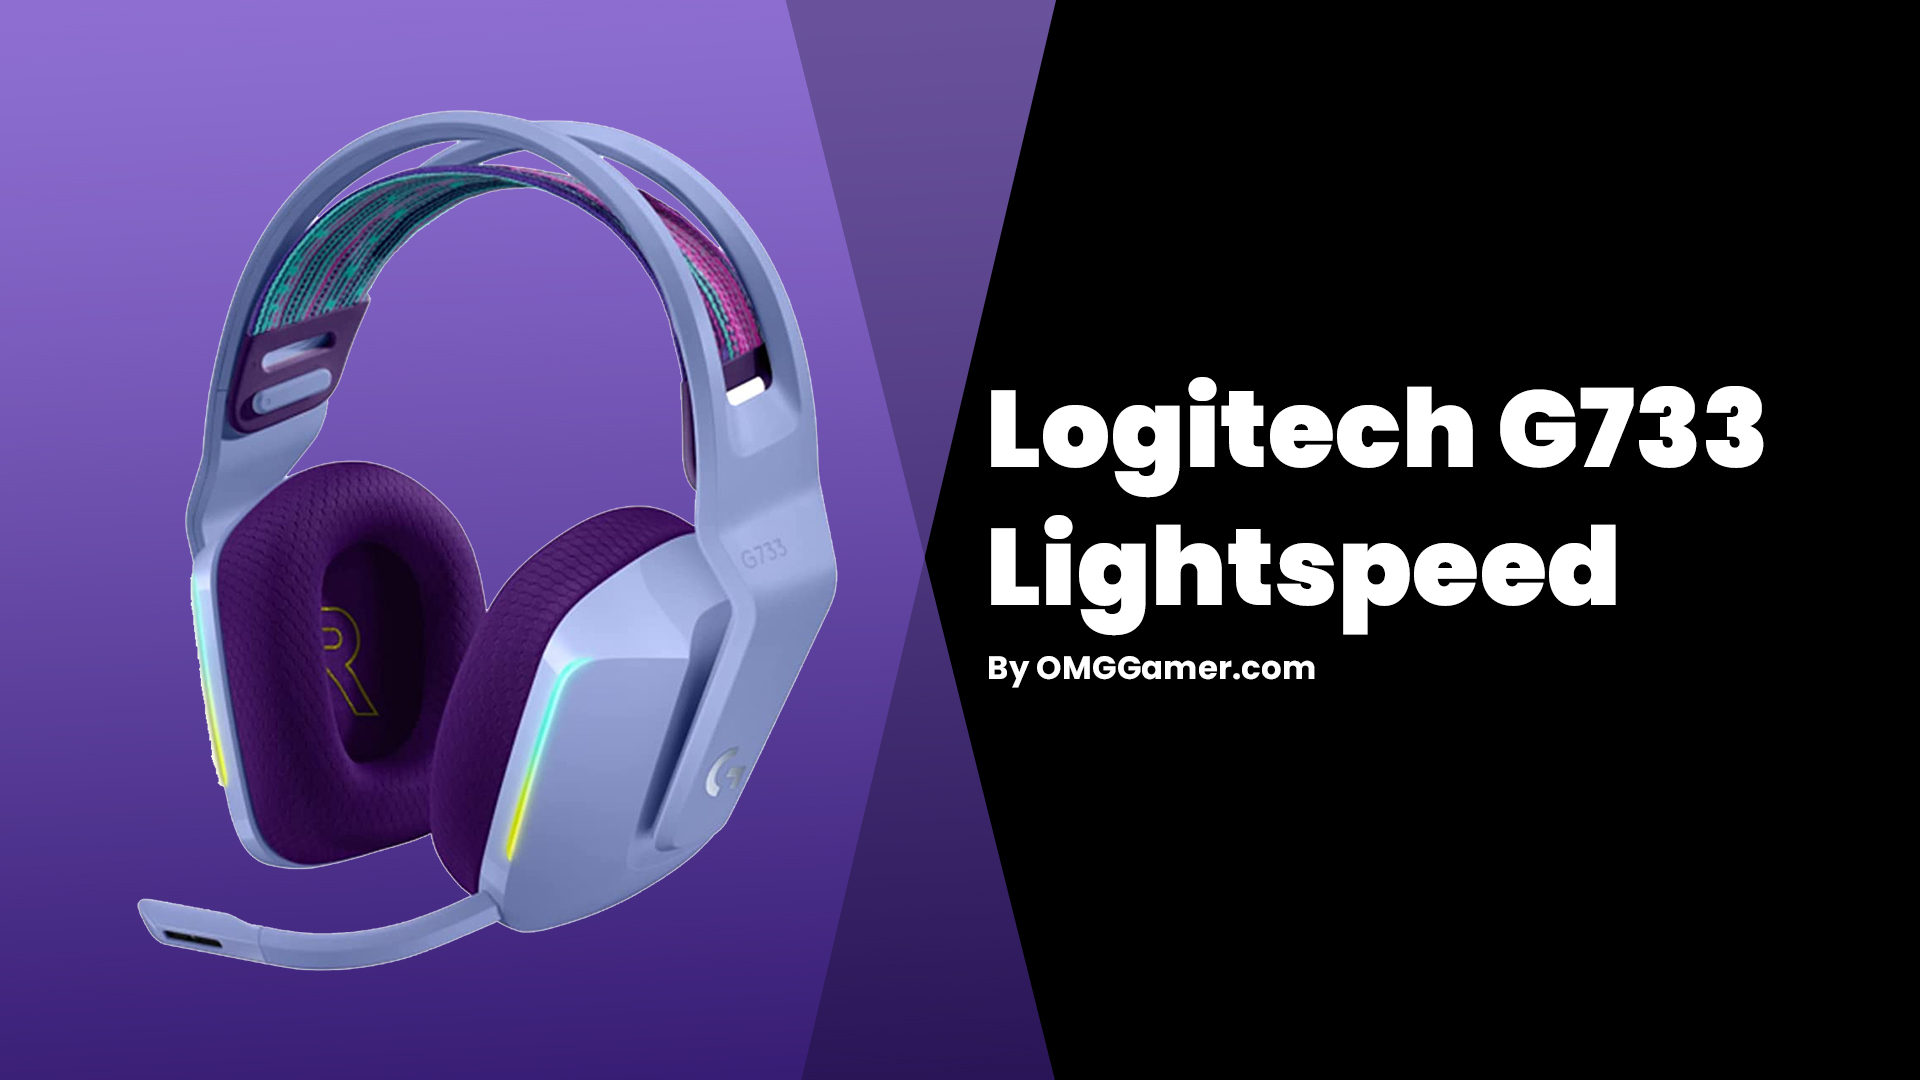 Logitech G733 Lightspeed